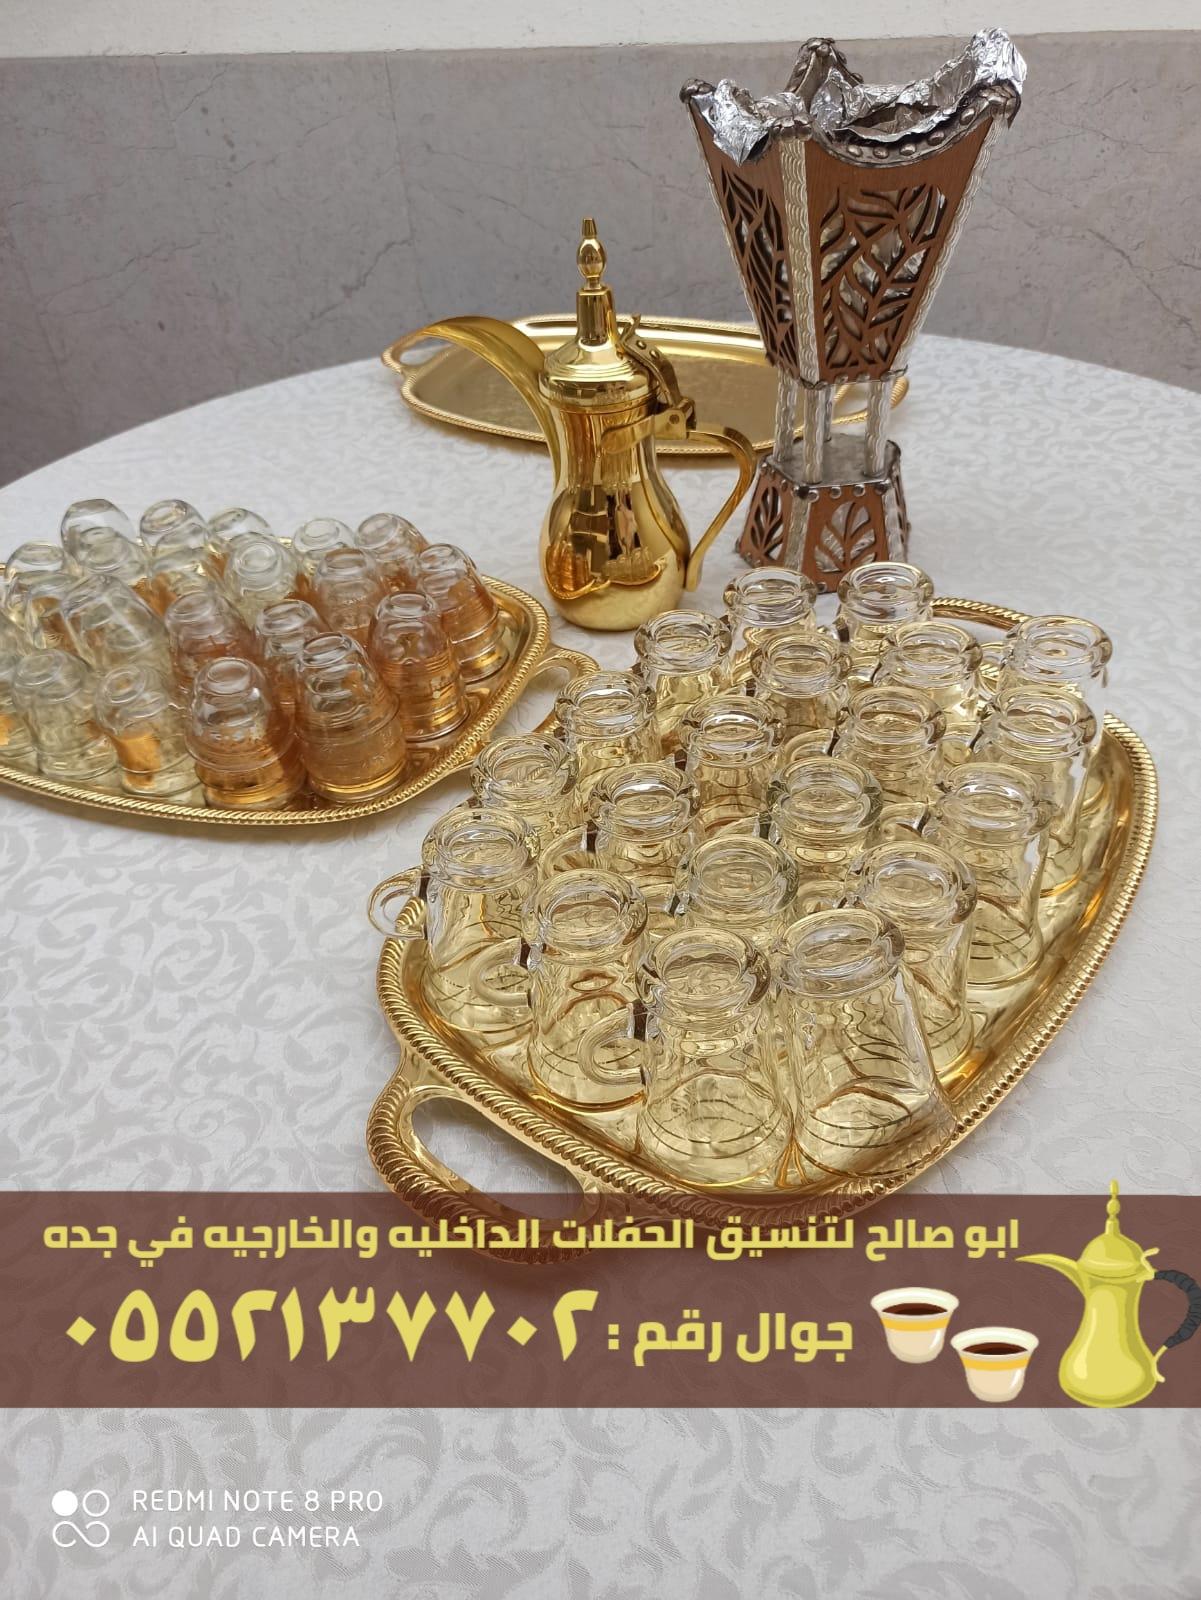 صبابين قهوة و قهوجي ضيافه في جدة,0552137702 857041437